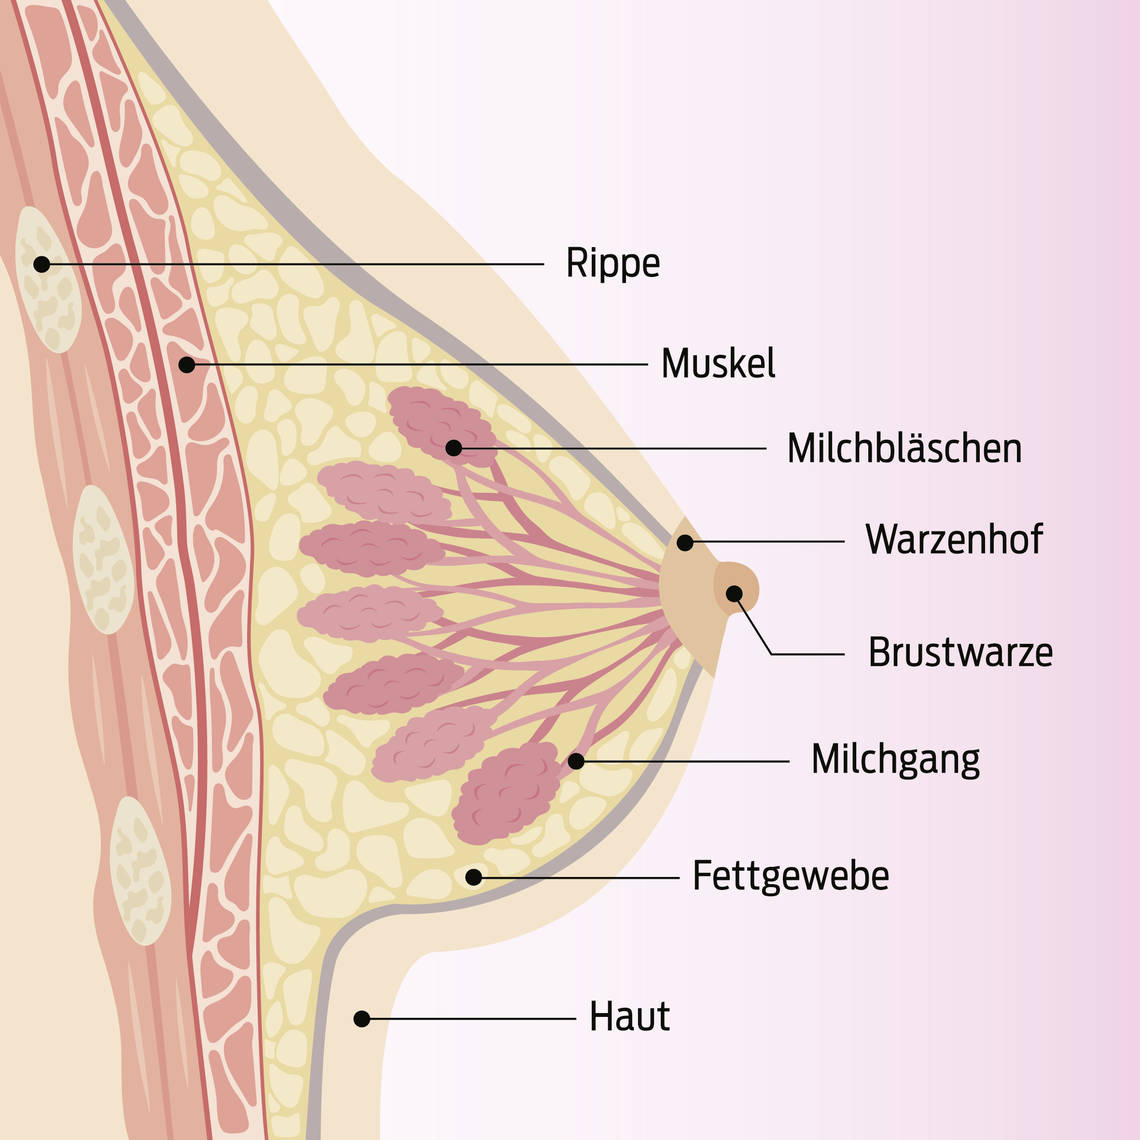 Beschriebene Sektion der Brust mit Rippe, Muskel, Milchbläschen, Warzenkopf, Brustwarze, Milchgang, Fettgewebe und Haut.